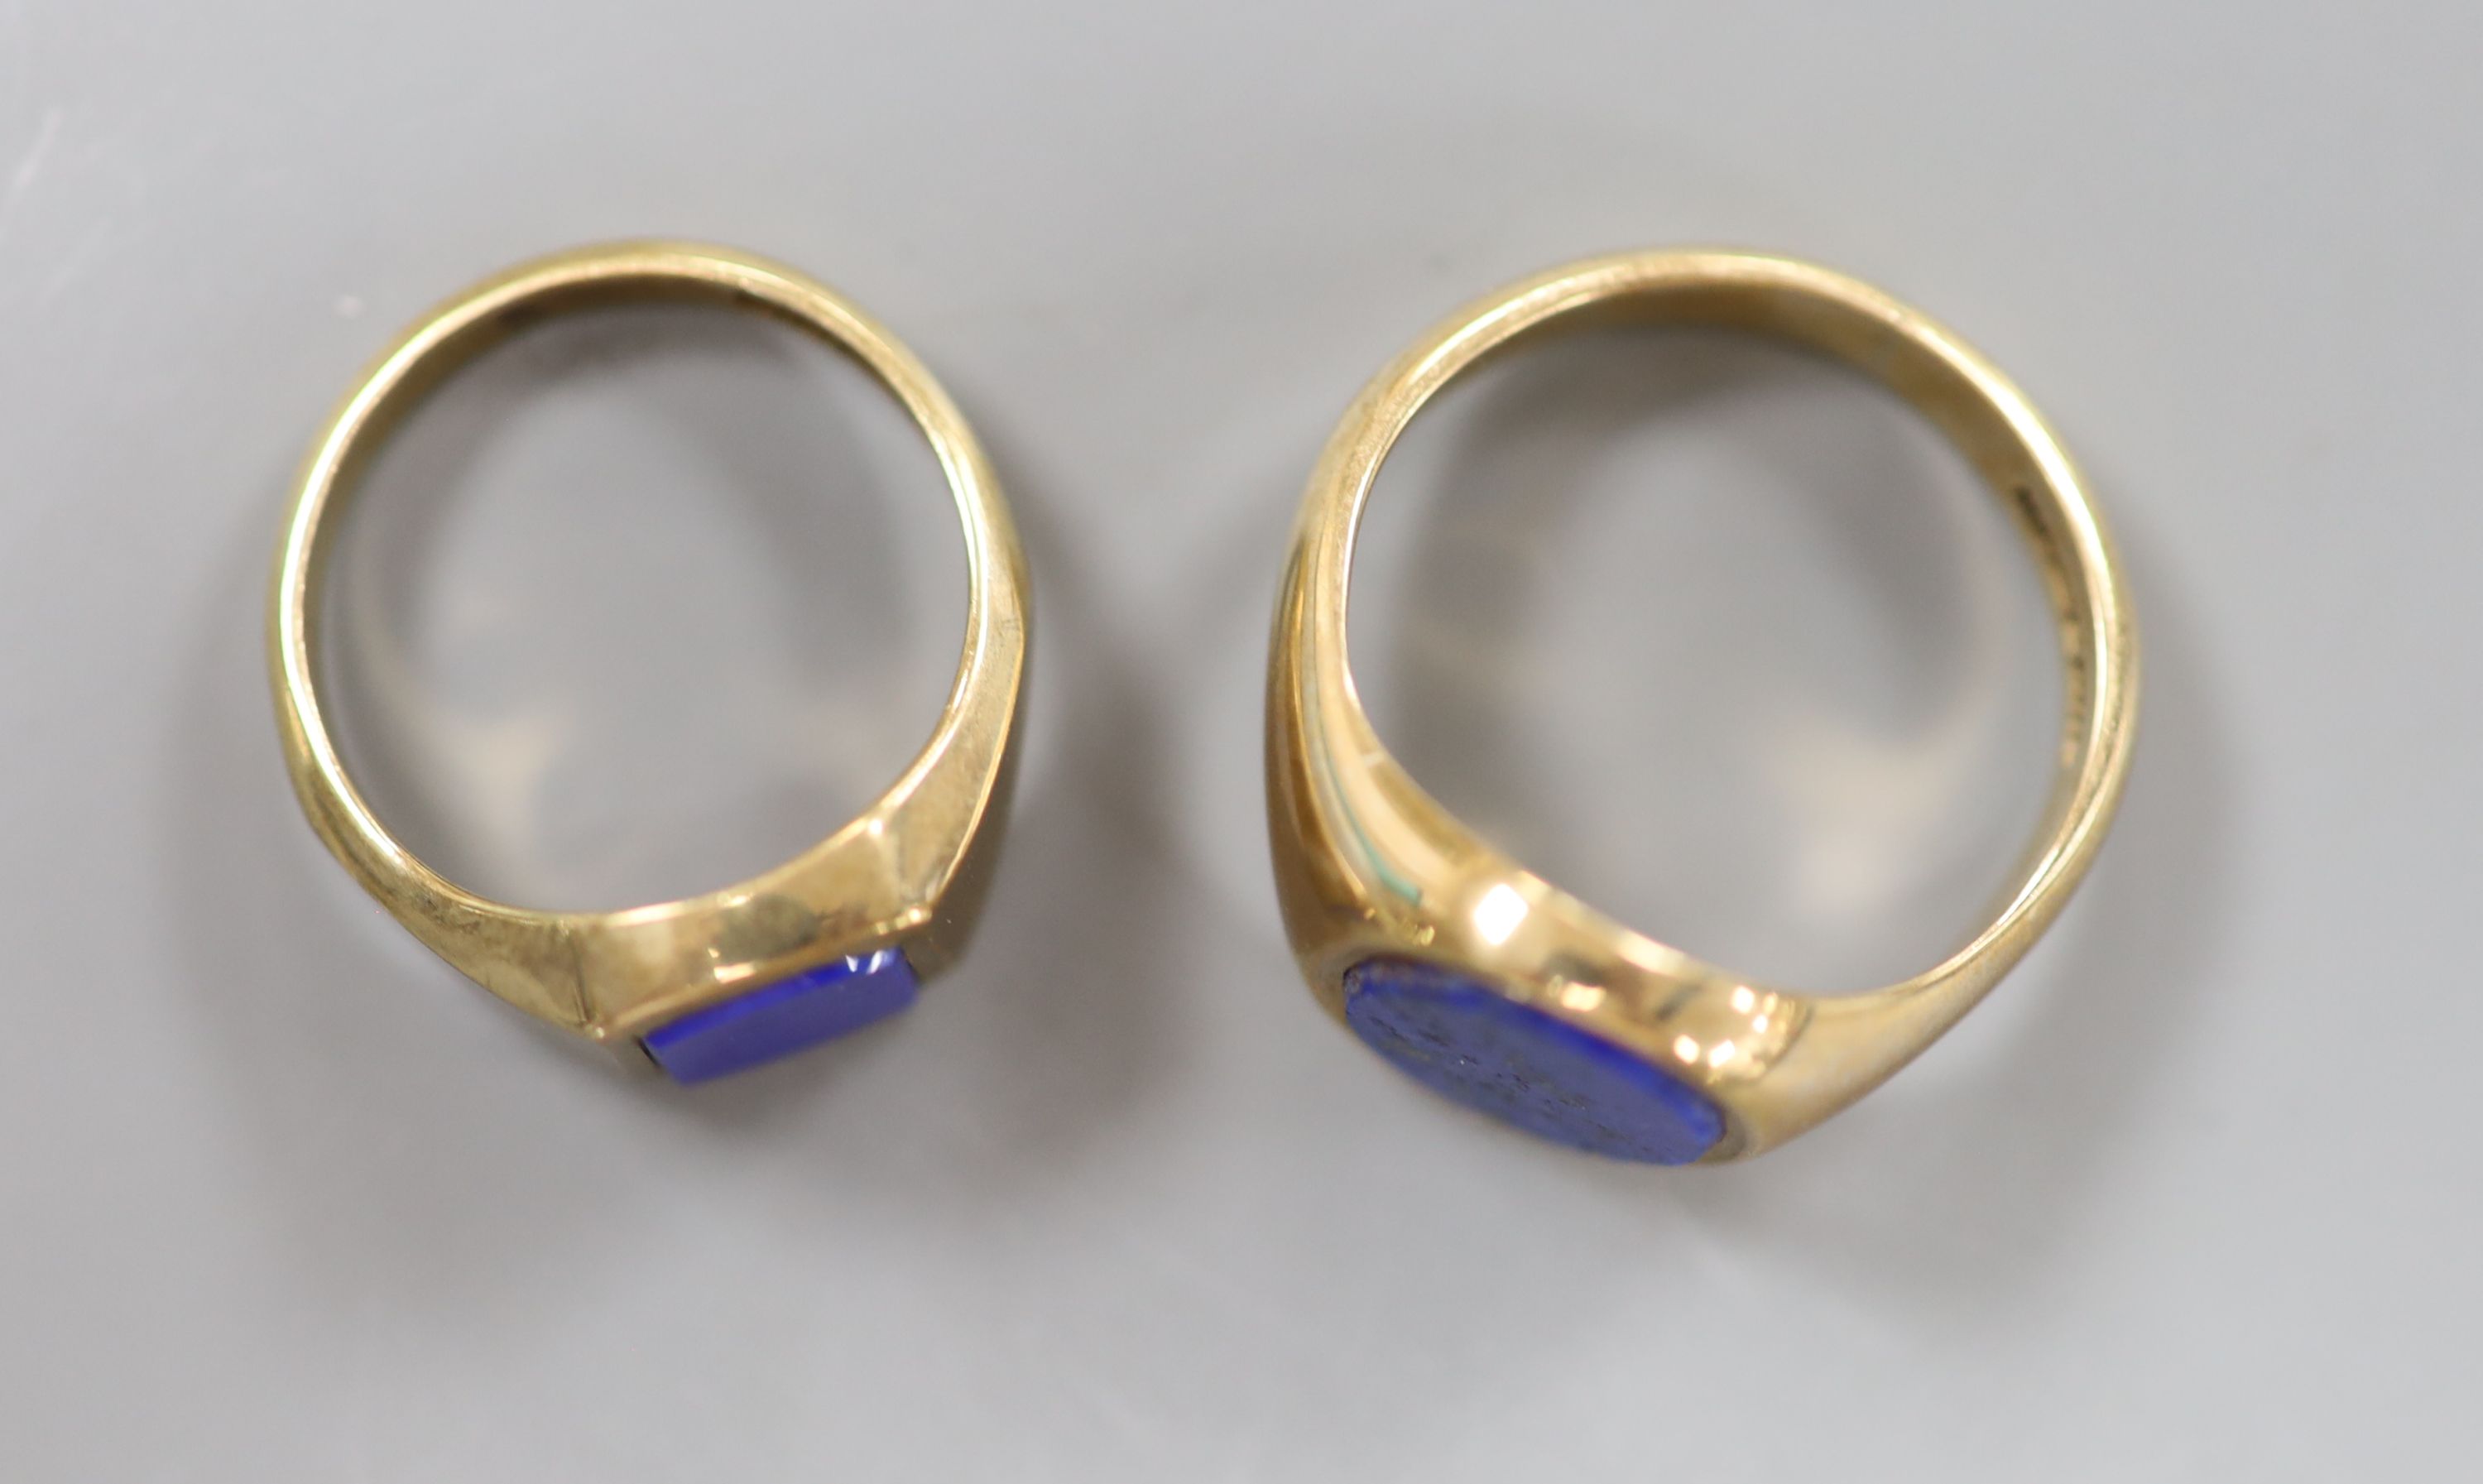 Two modern 9ct gold and lapis lazuli set signet rings, sizes J/K & O/P